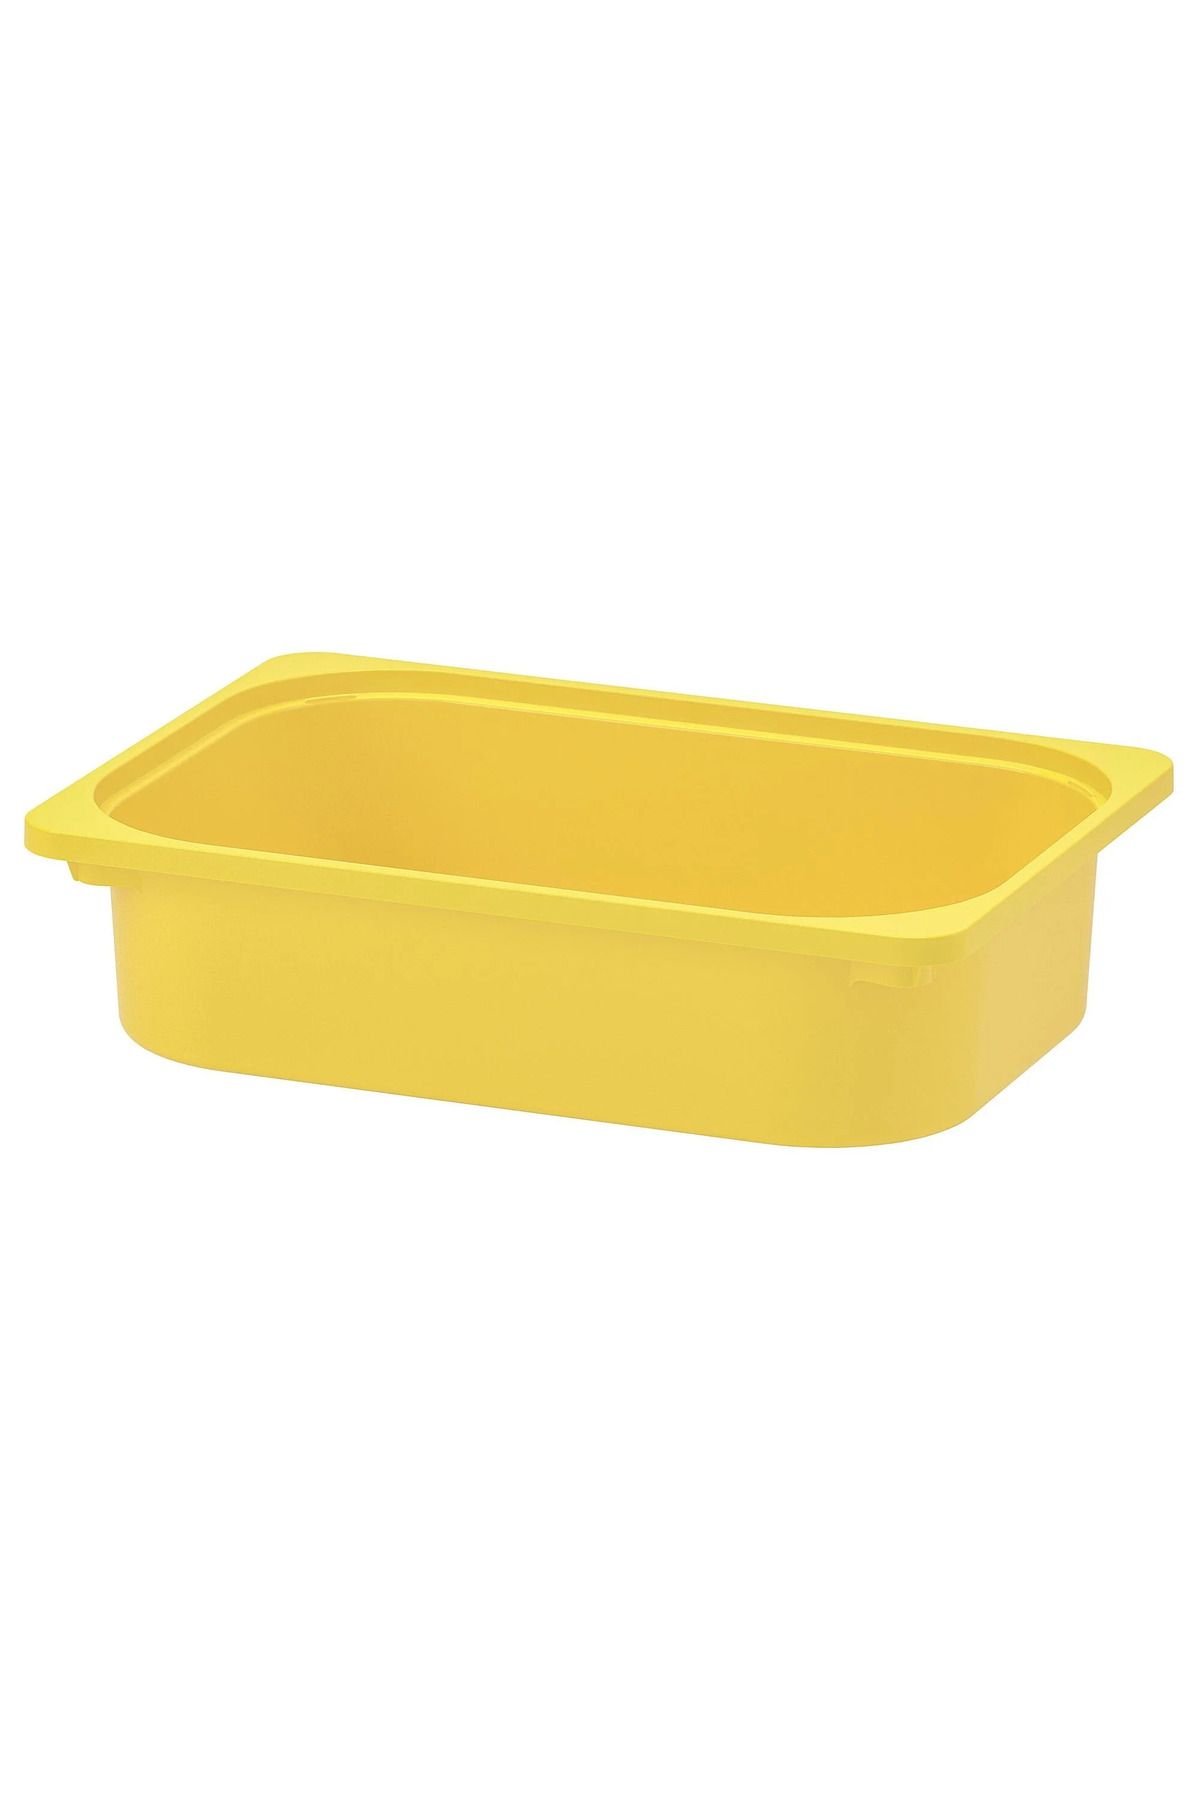 IKEA TROFAST sarı 42x30x10 cm oyuncak saklama kutusu